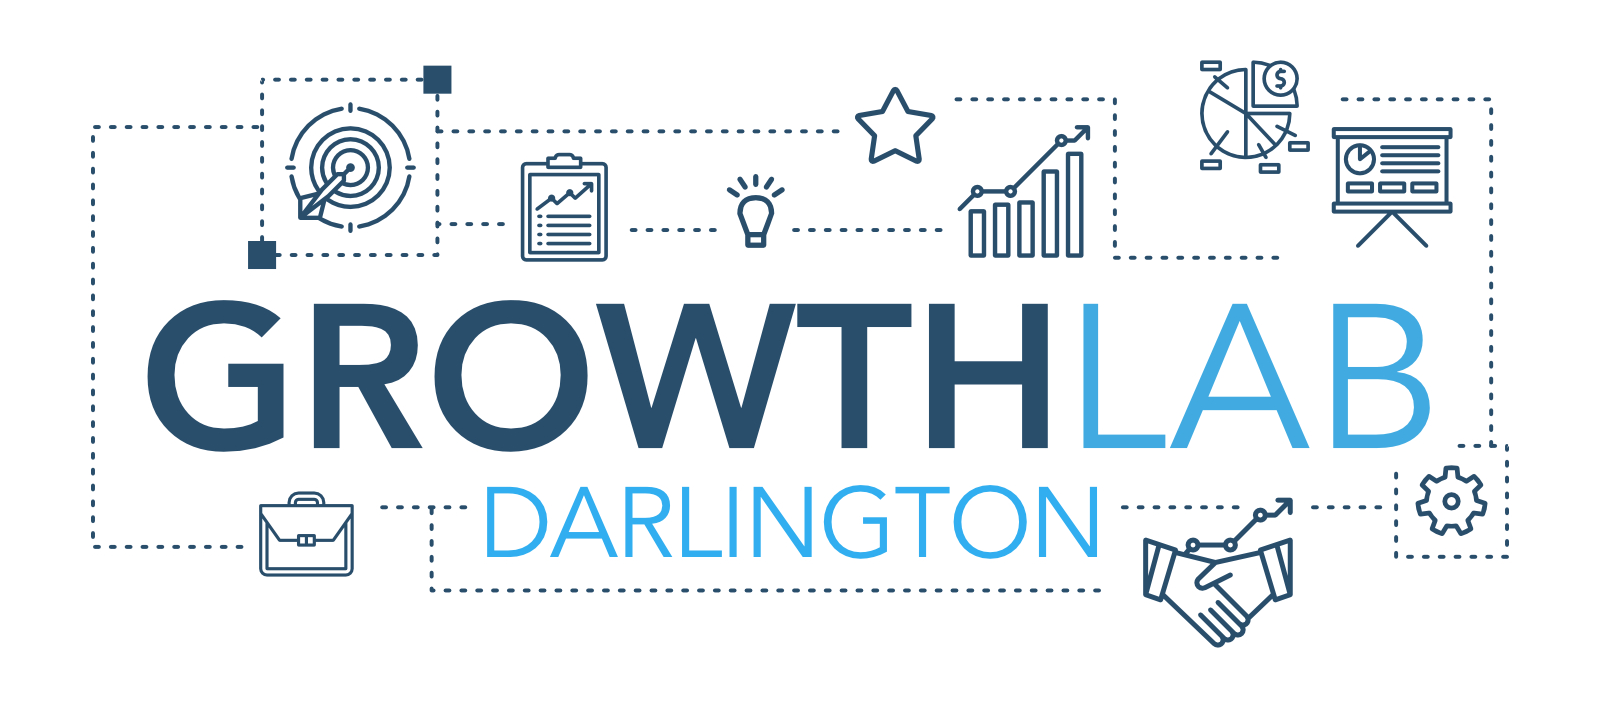 Darlington Growth Lab